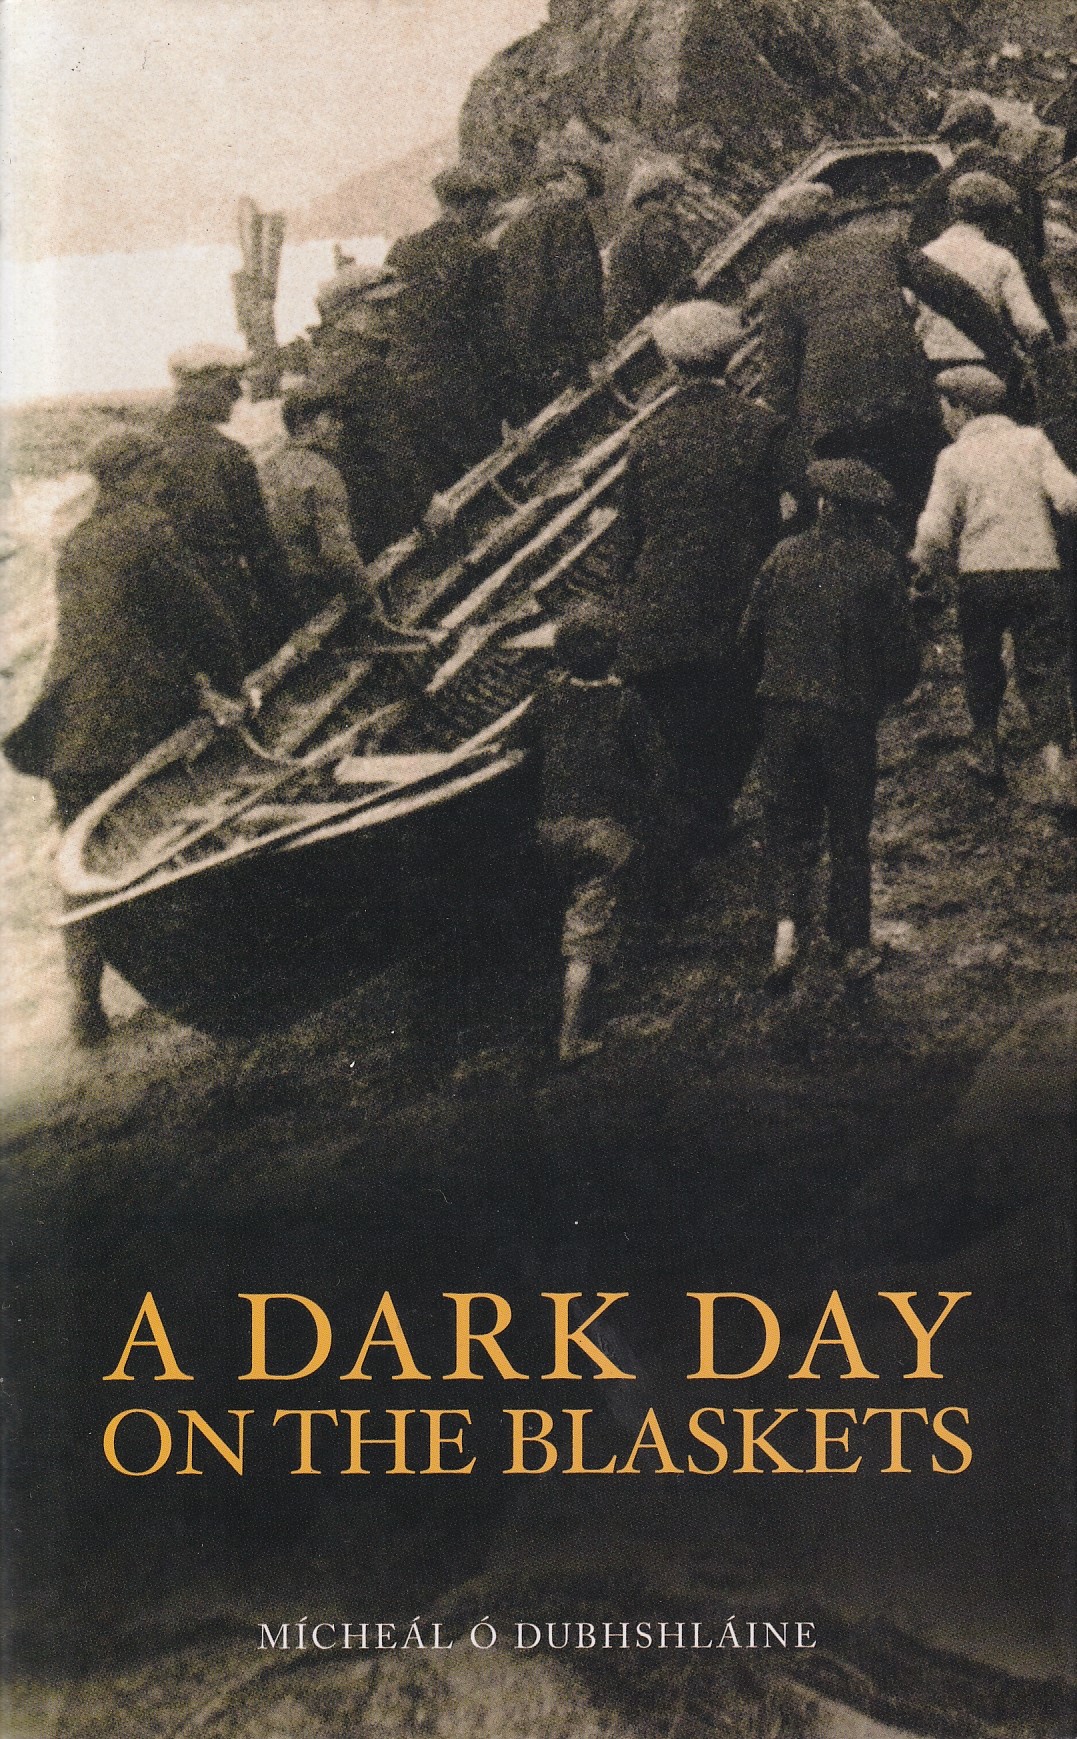 A Dark Day on the Blaskets by Mícheál Ó Dubhshláine